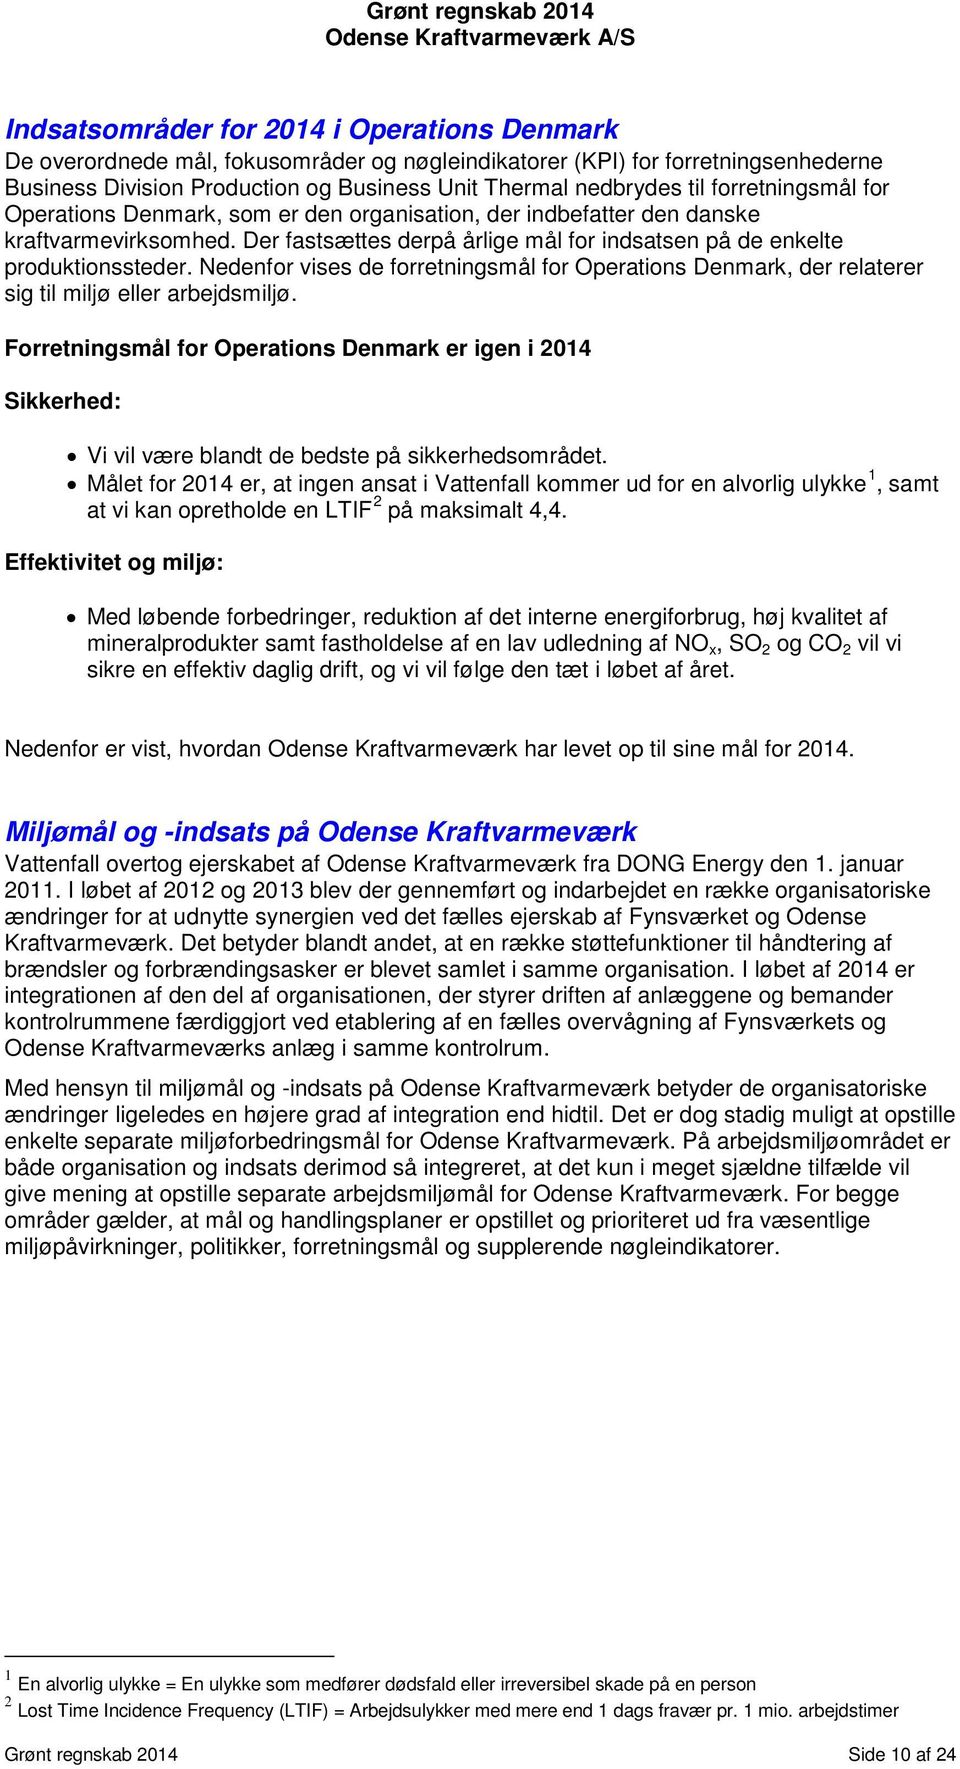 Nedenfor vises de forretningsmål for Operations Denmark, der relaterer sig til miljø eller arbejdsmiljø.